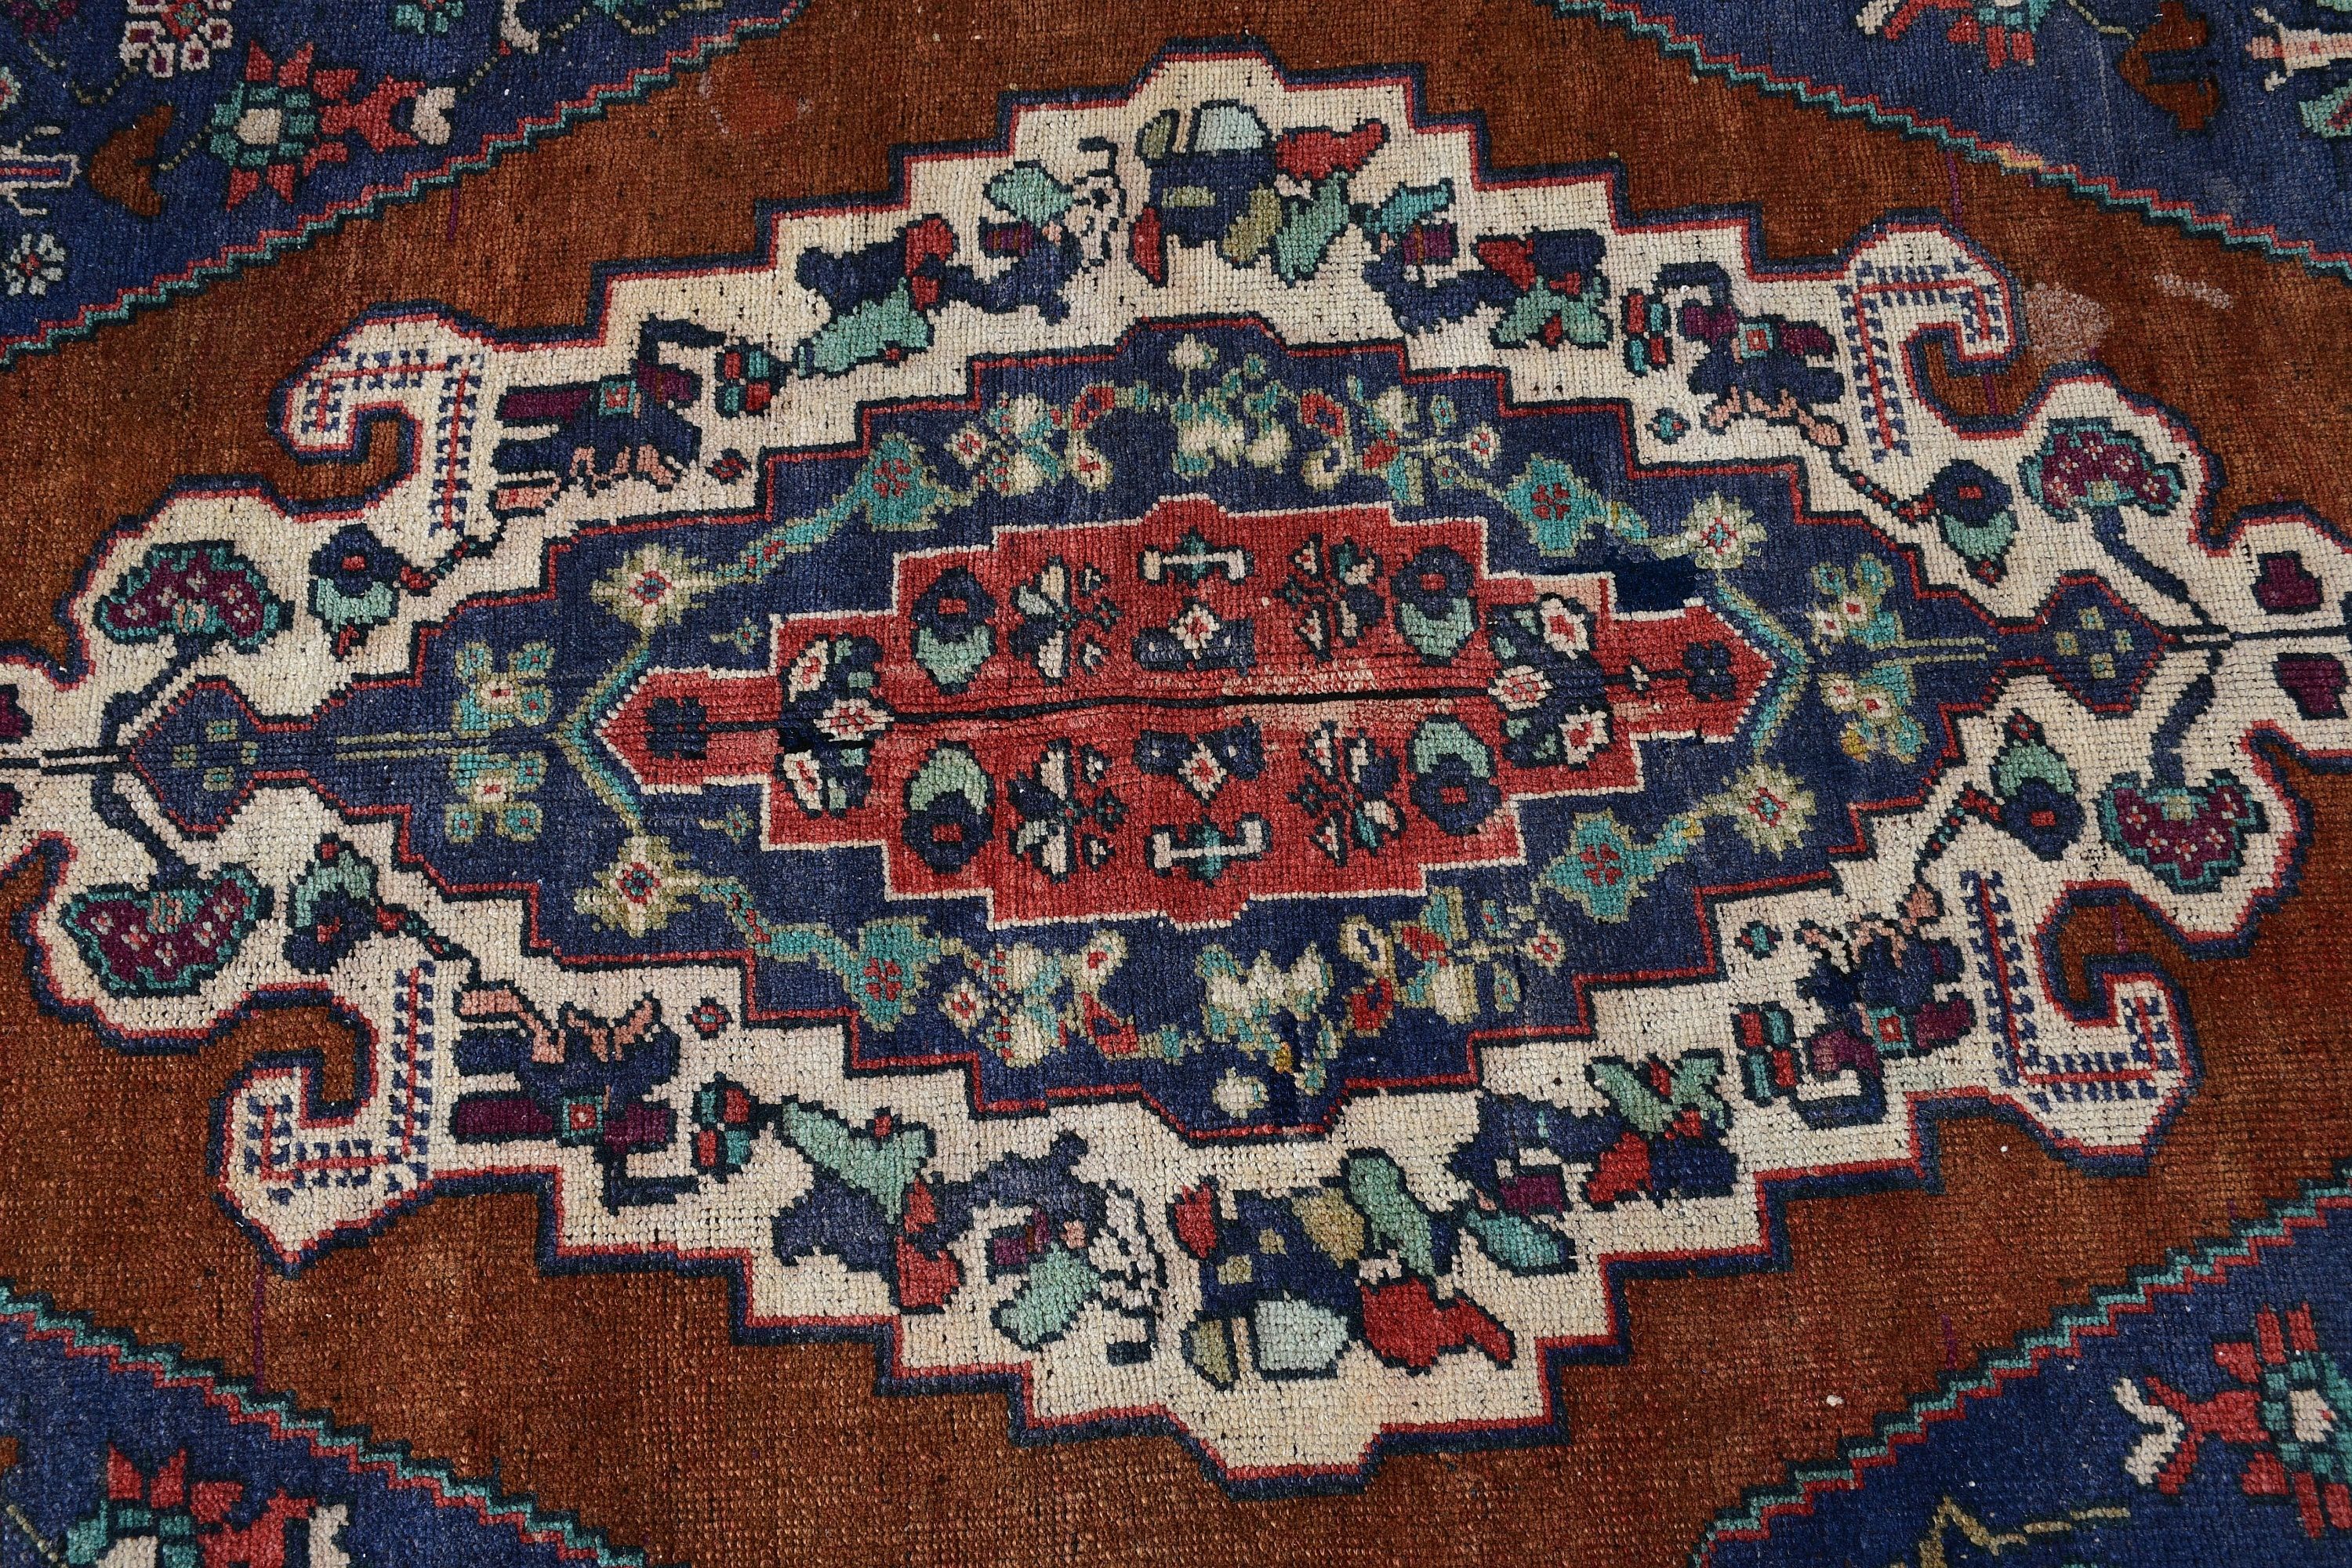 Turkish Rug, Blue Moroccan Rug, Living Room Rug, Floor Rugs, Salon Rug, Vintage Rug, Antique Rug, 5.2x8.2 ft Large Rug, Rugs for Salon